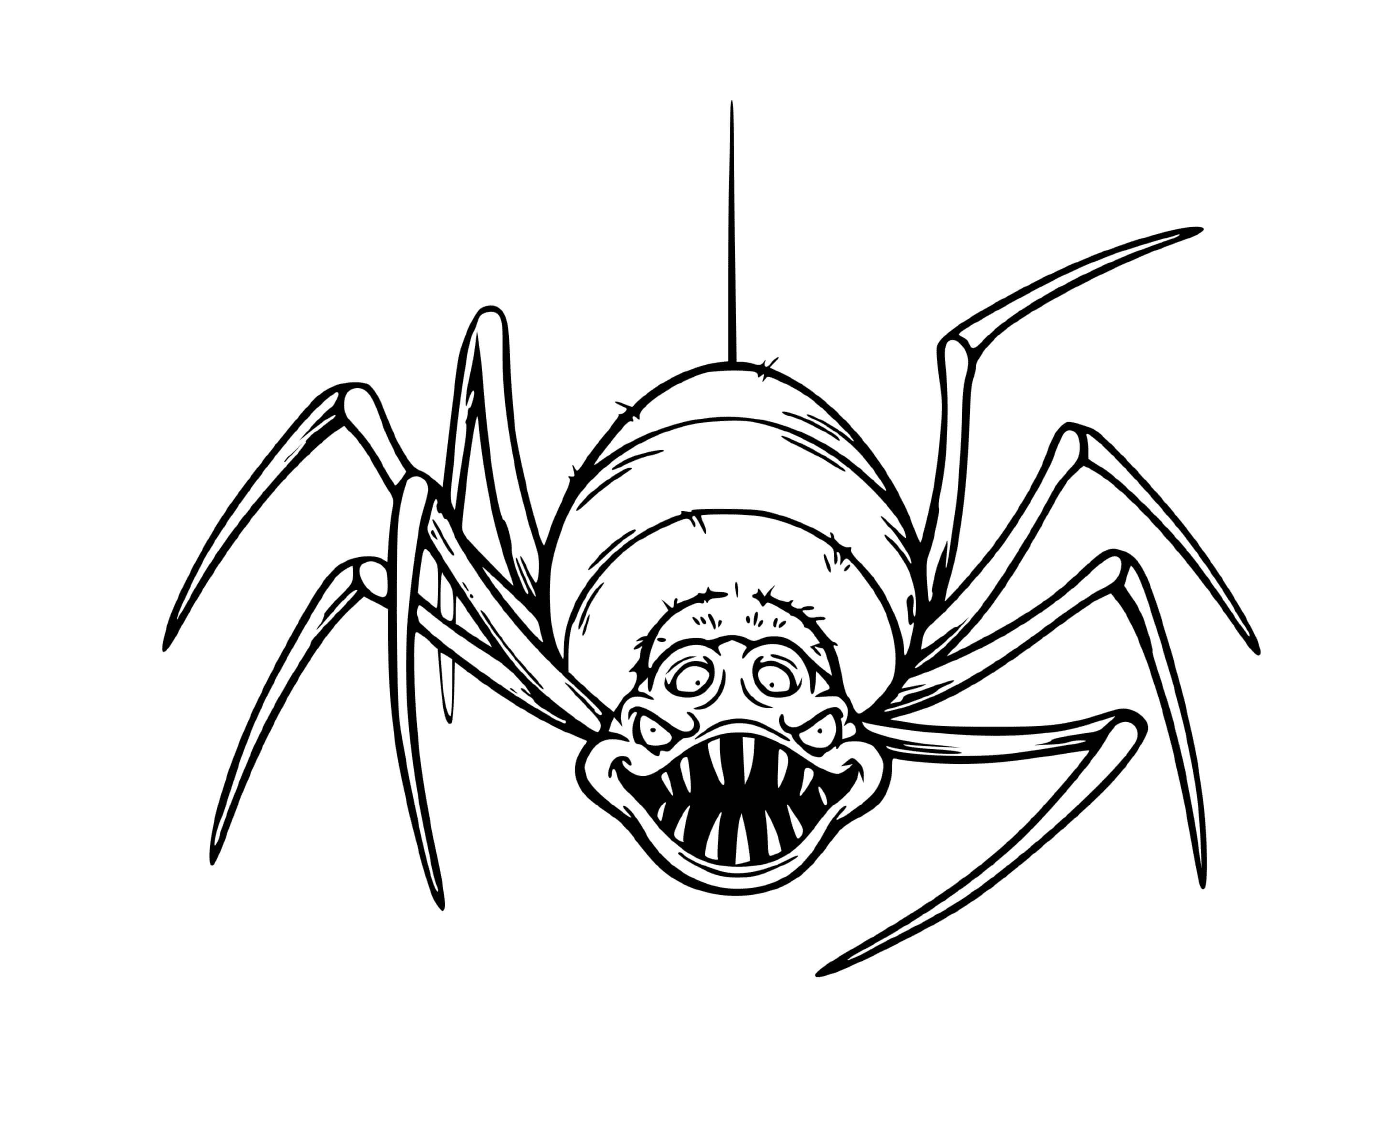  Un ragno terrificante che fa molto paura 